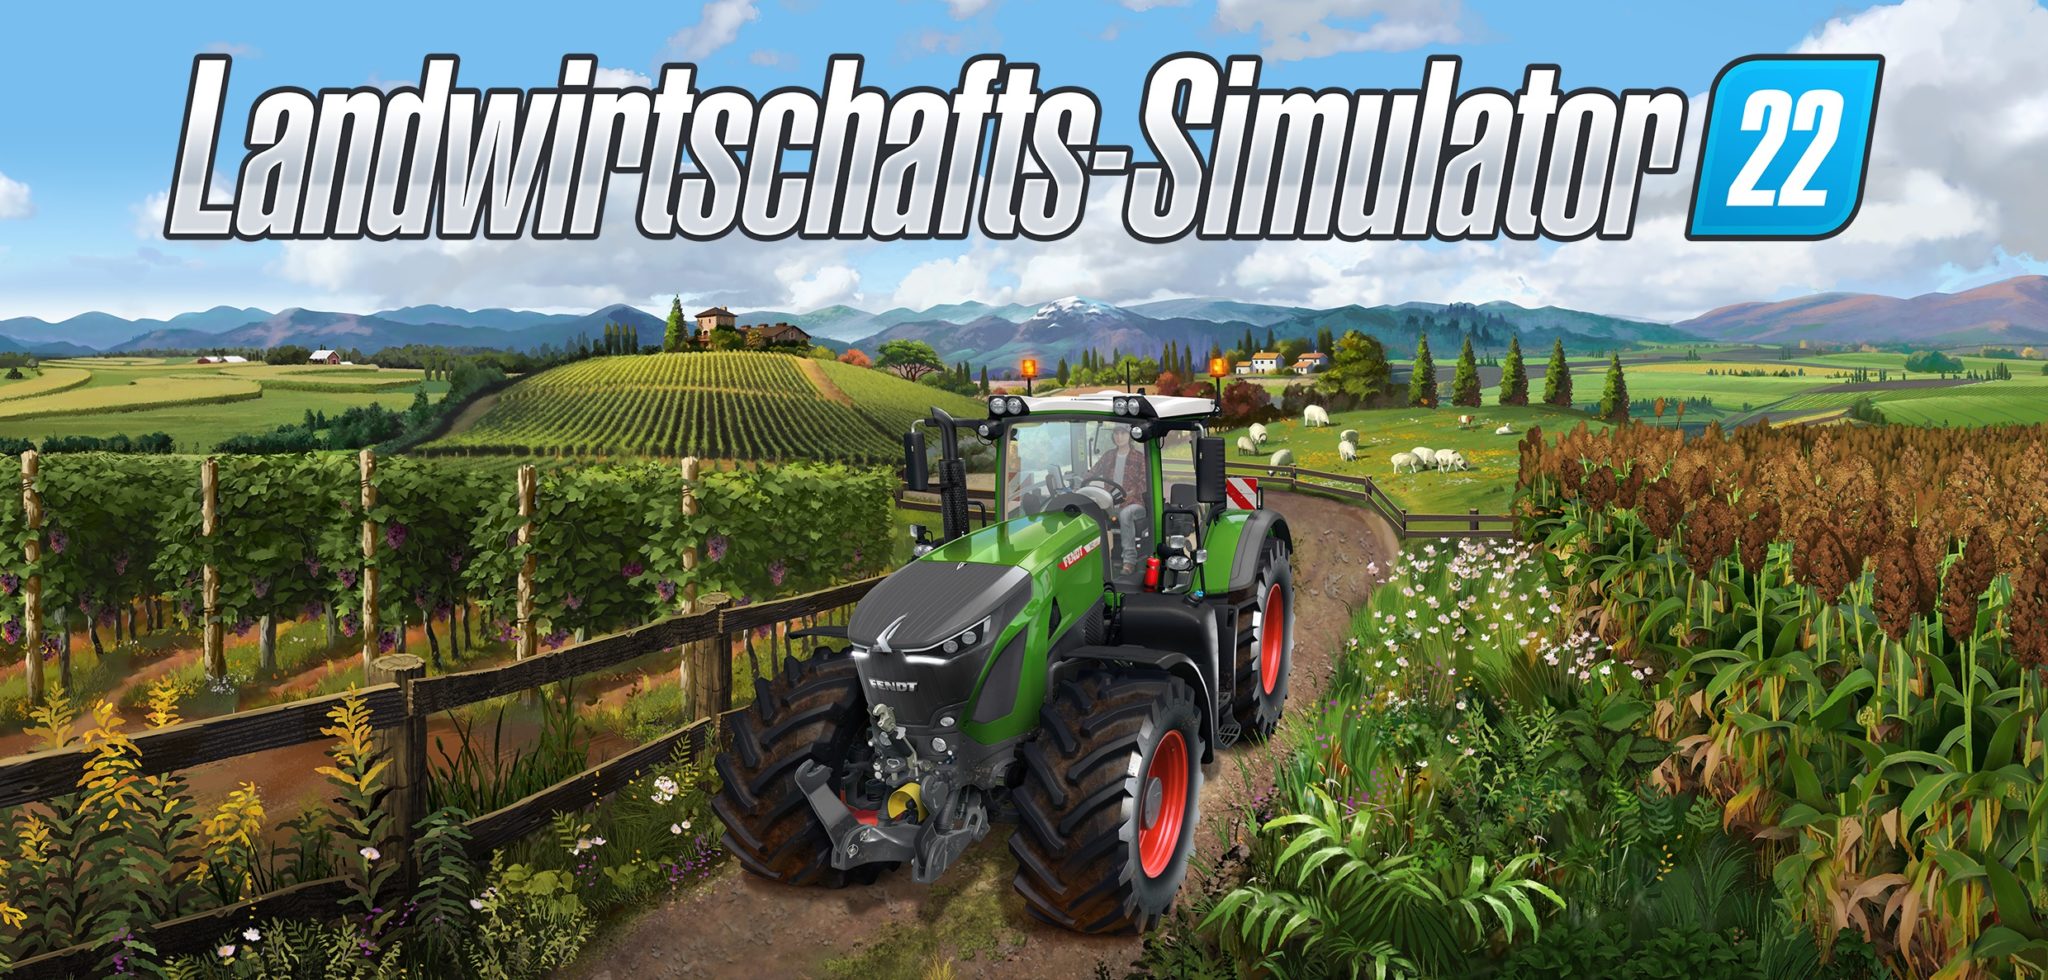 Landwirtschafts Simulator 22 Trailer Stellt Neue Karte Elmcreek Vor Gamerinfos 0224